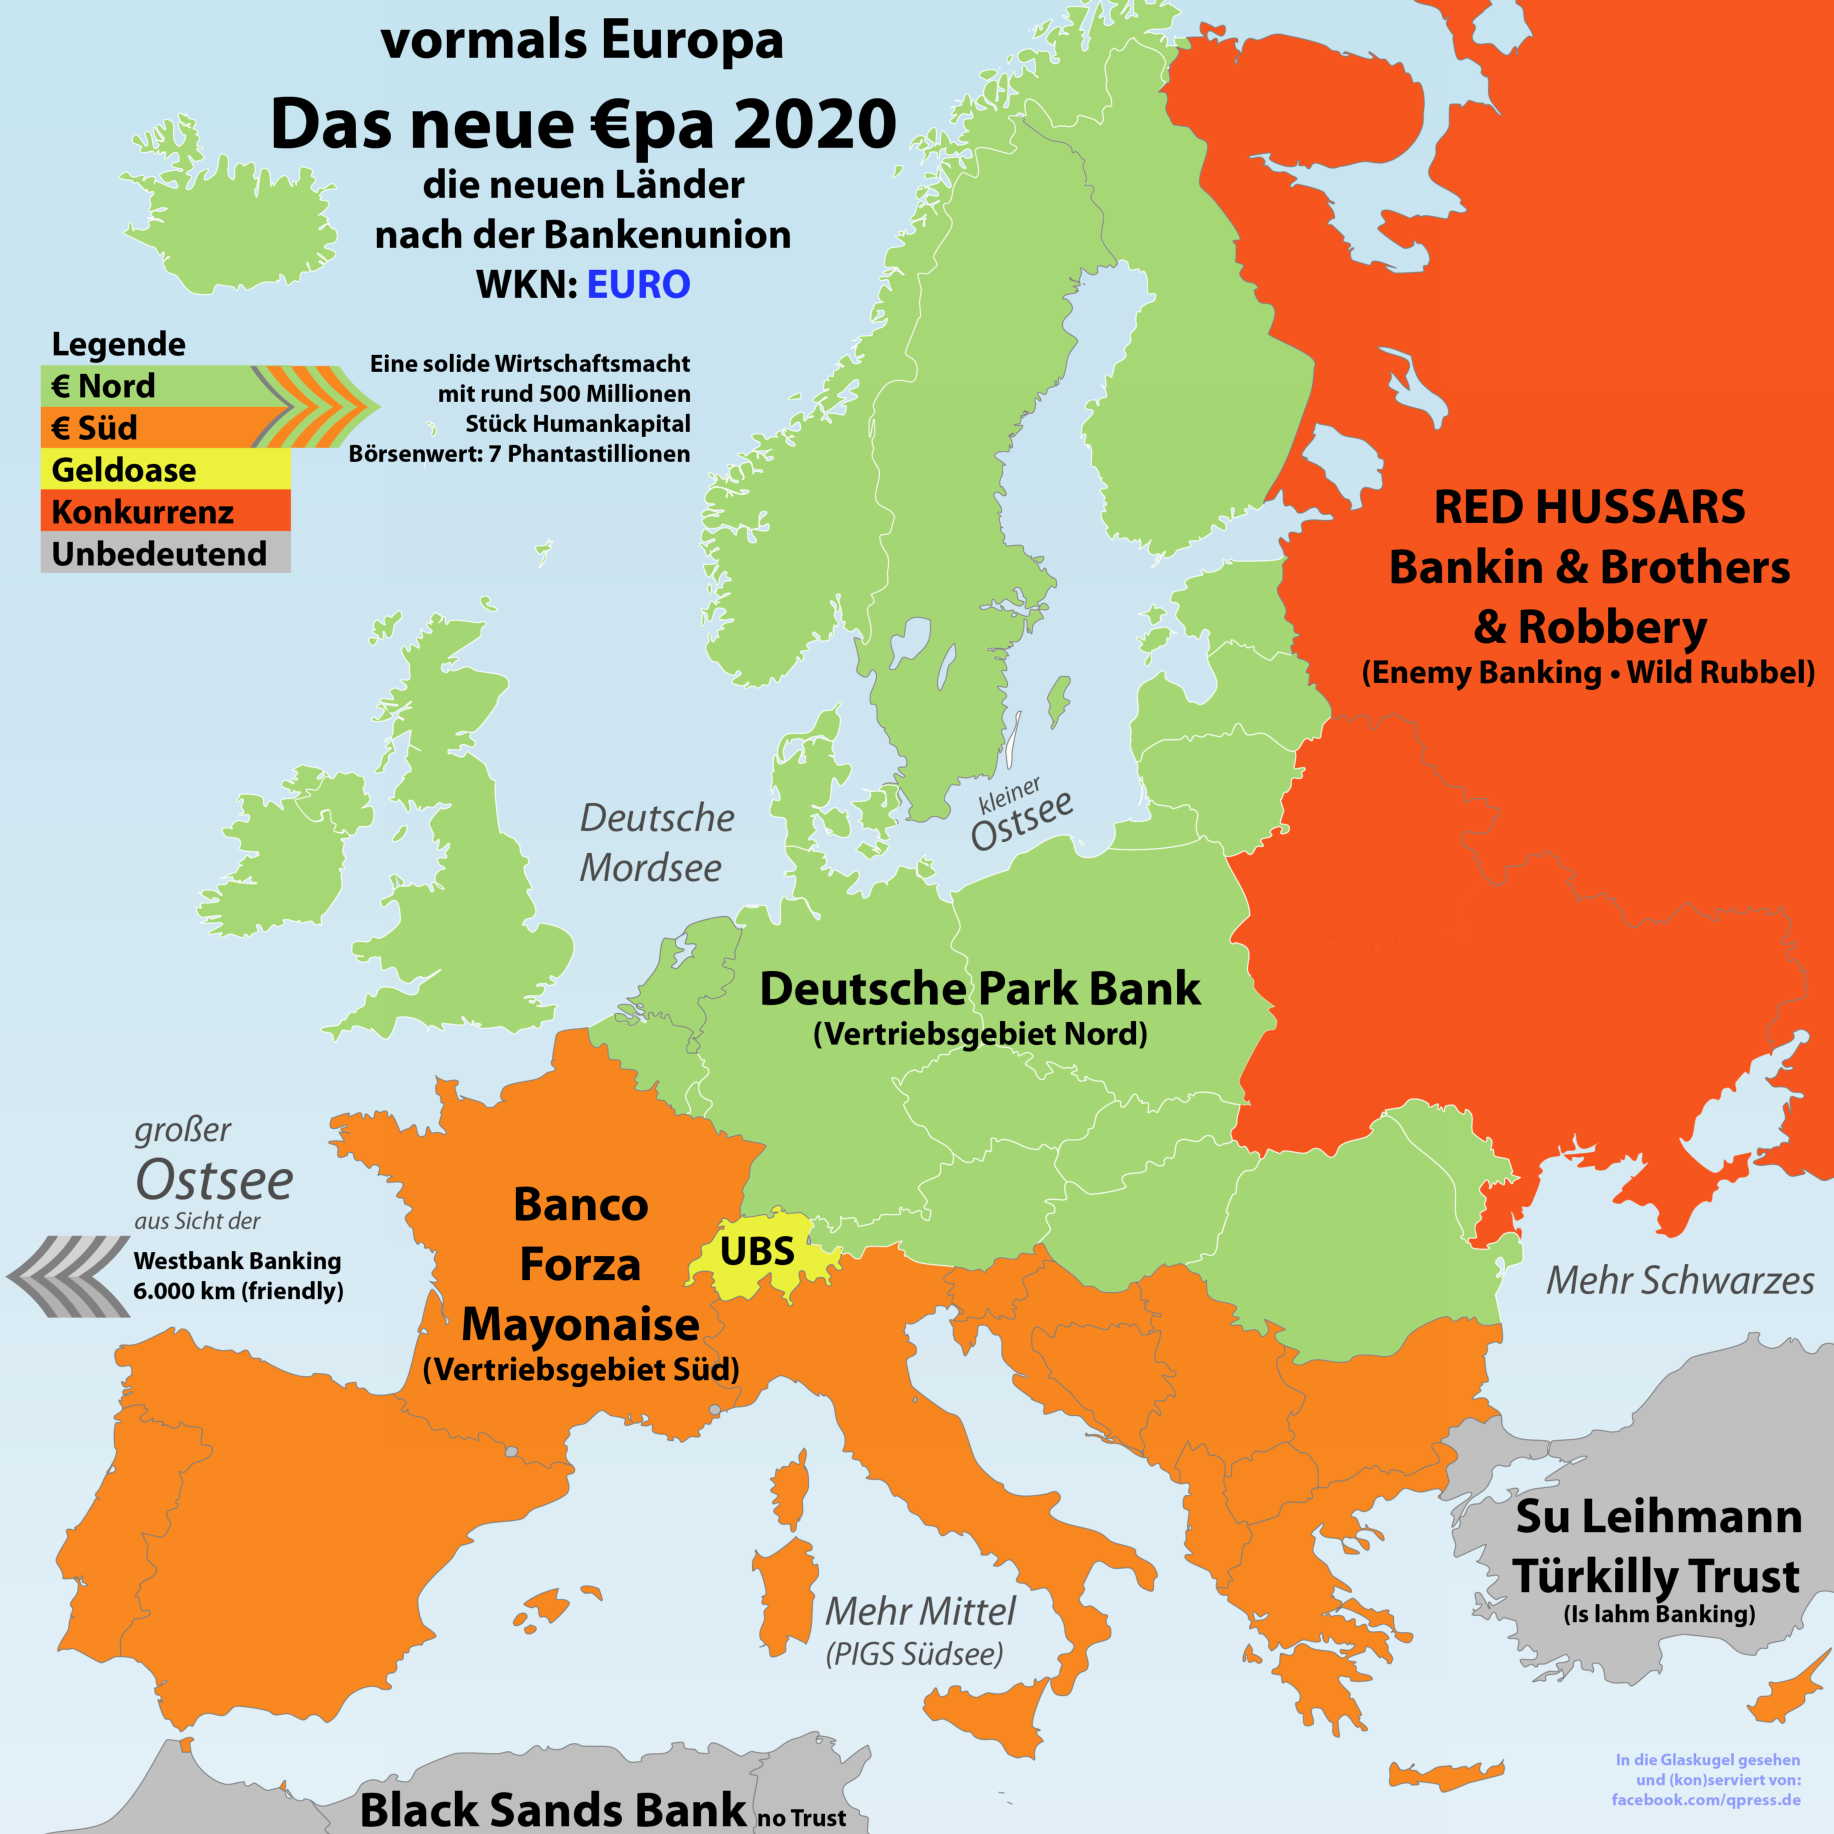 Schweizer haben kein Recht auf Selbstbestimmung  Europa 2020 nach Bankenunion